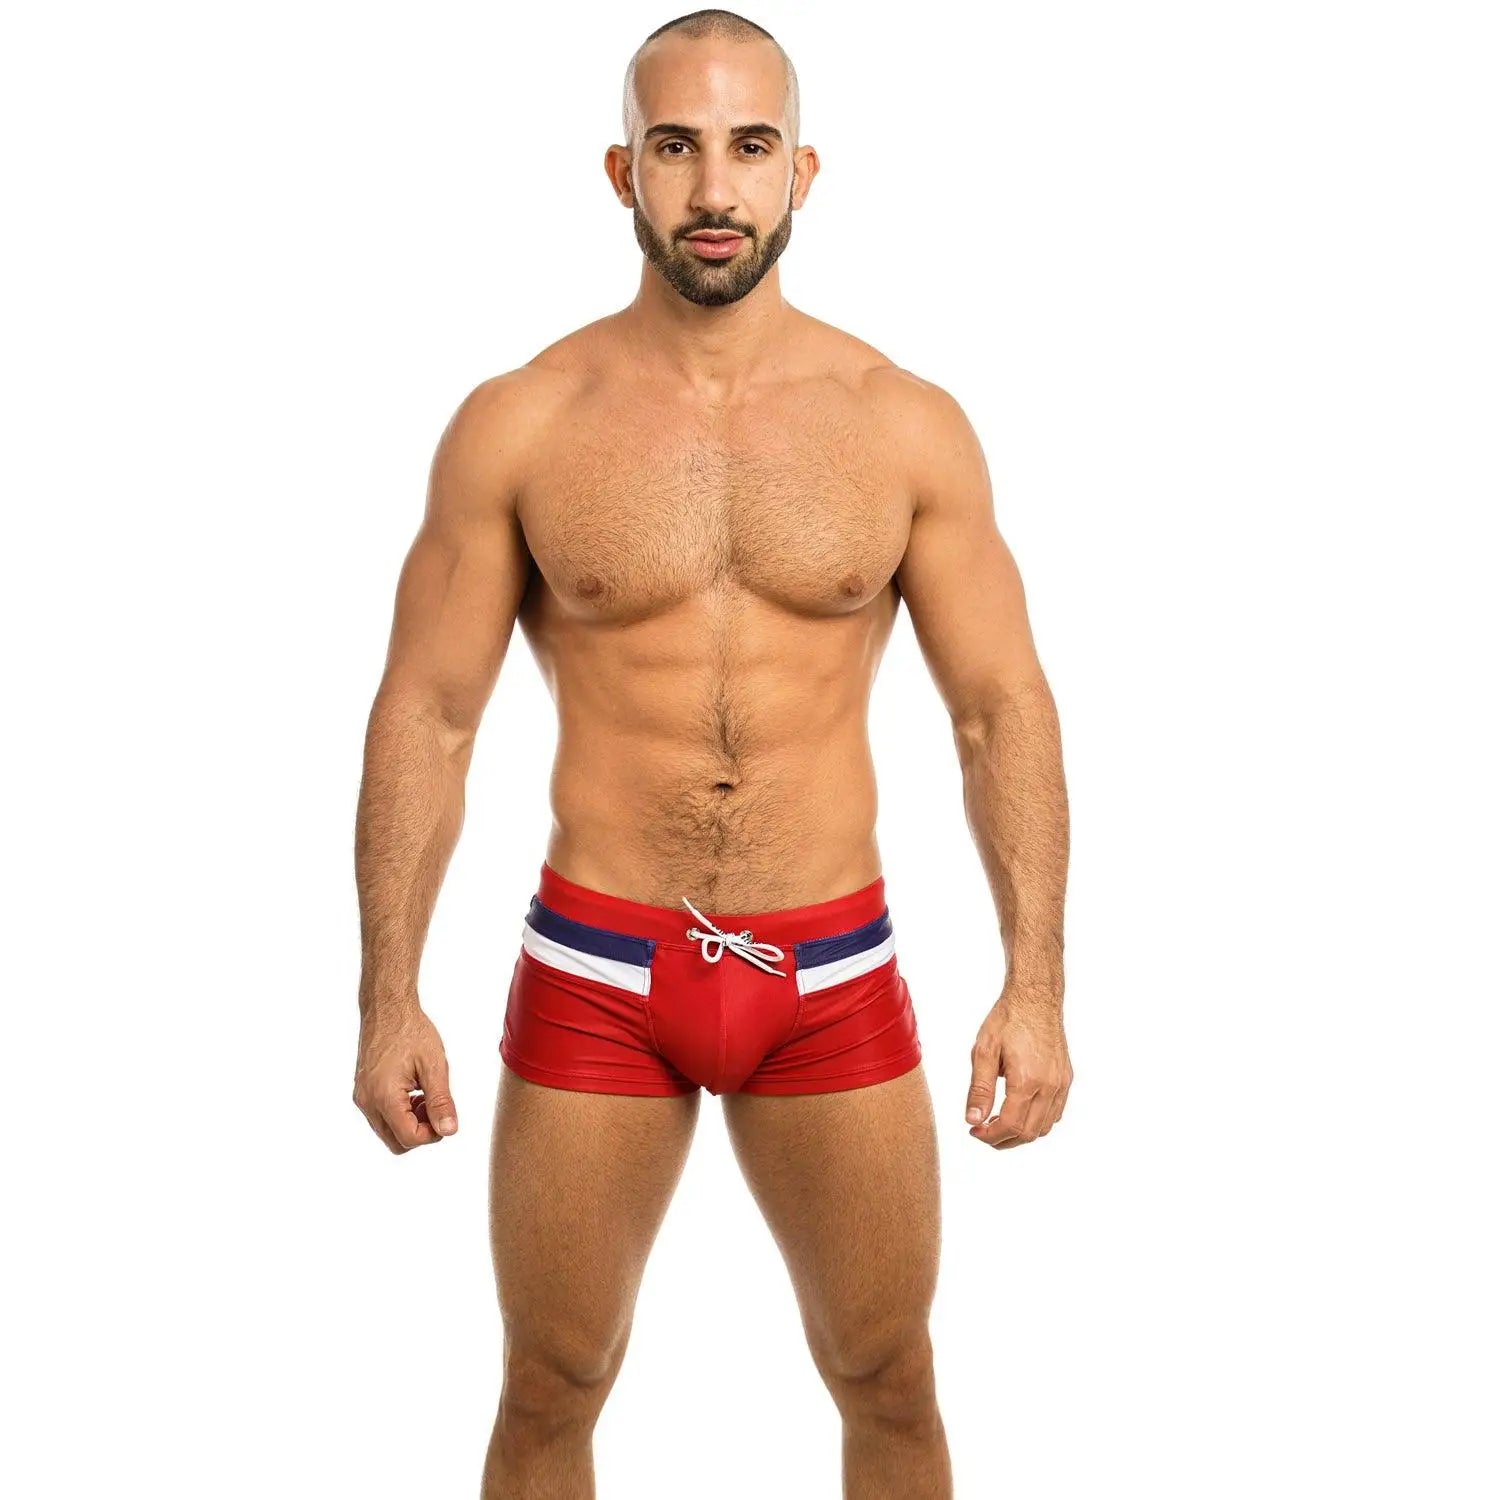 LOVEMI - Boxer shorts men